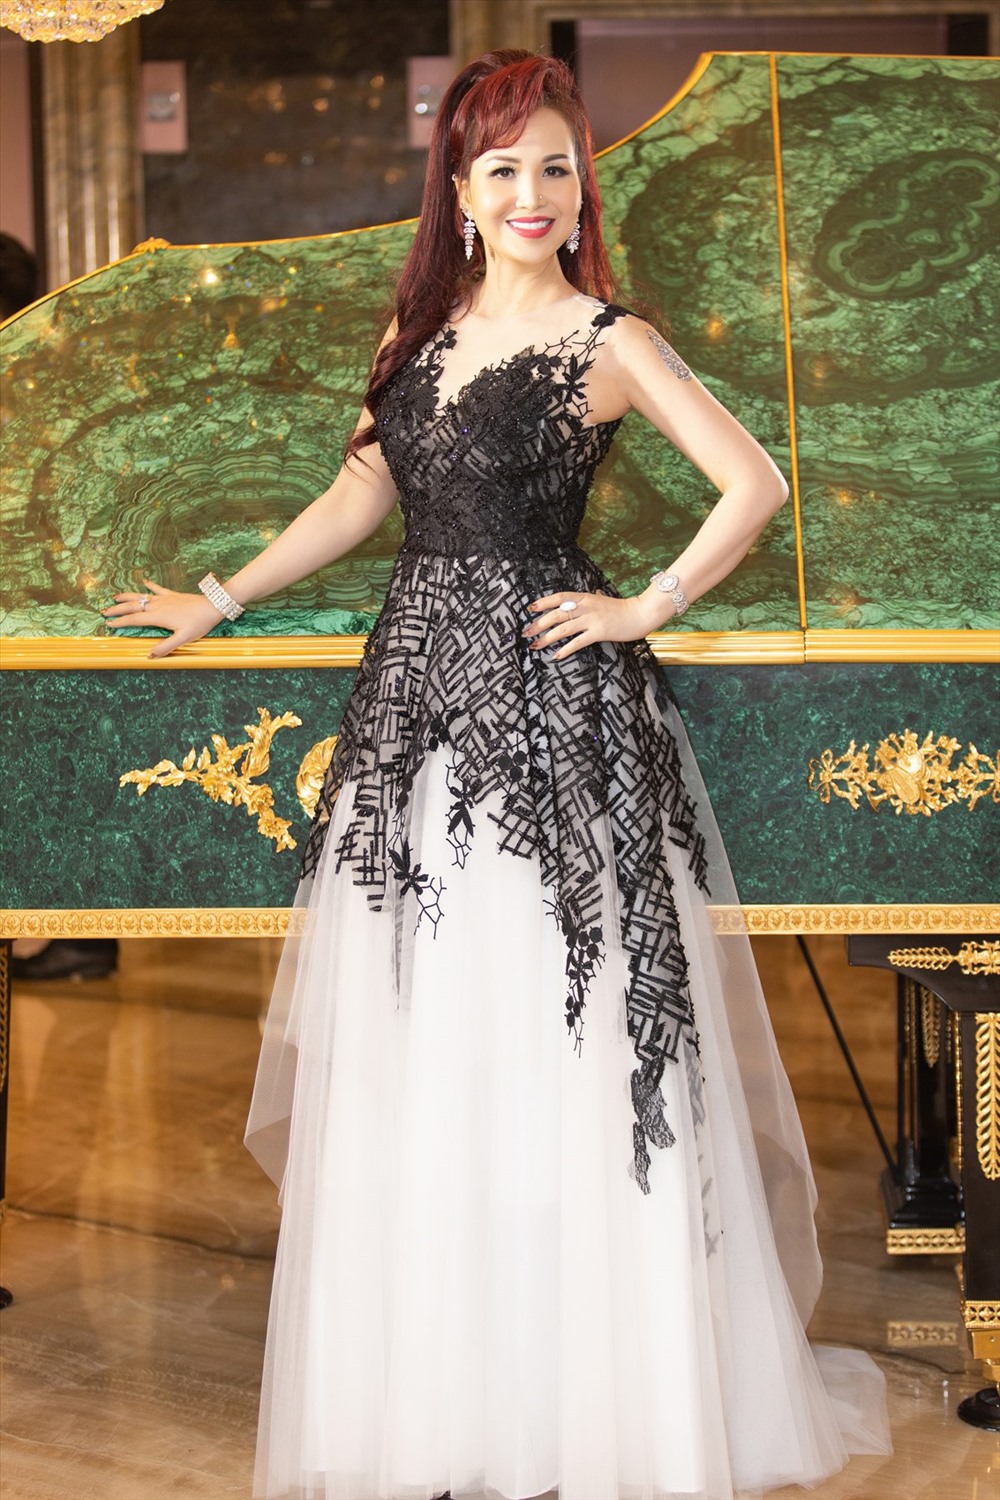 Hoa hậu Diệu Hoa cũng sẽ là khách mời đặc biệt trong show diễn của nhà thiết kế Hoàng Hải.